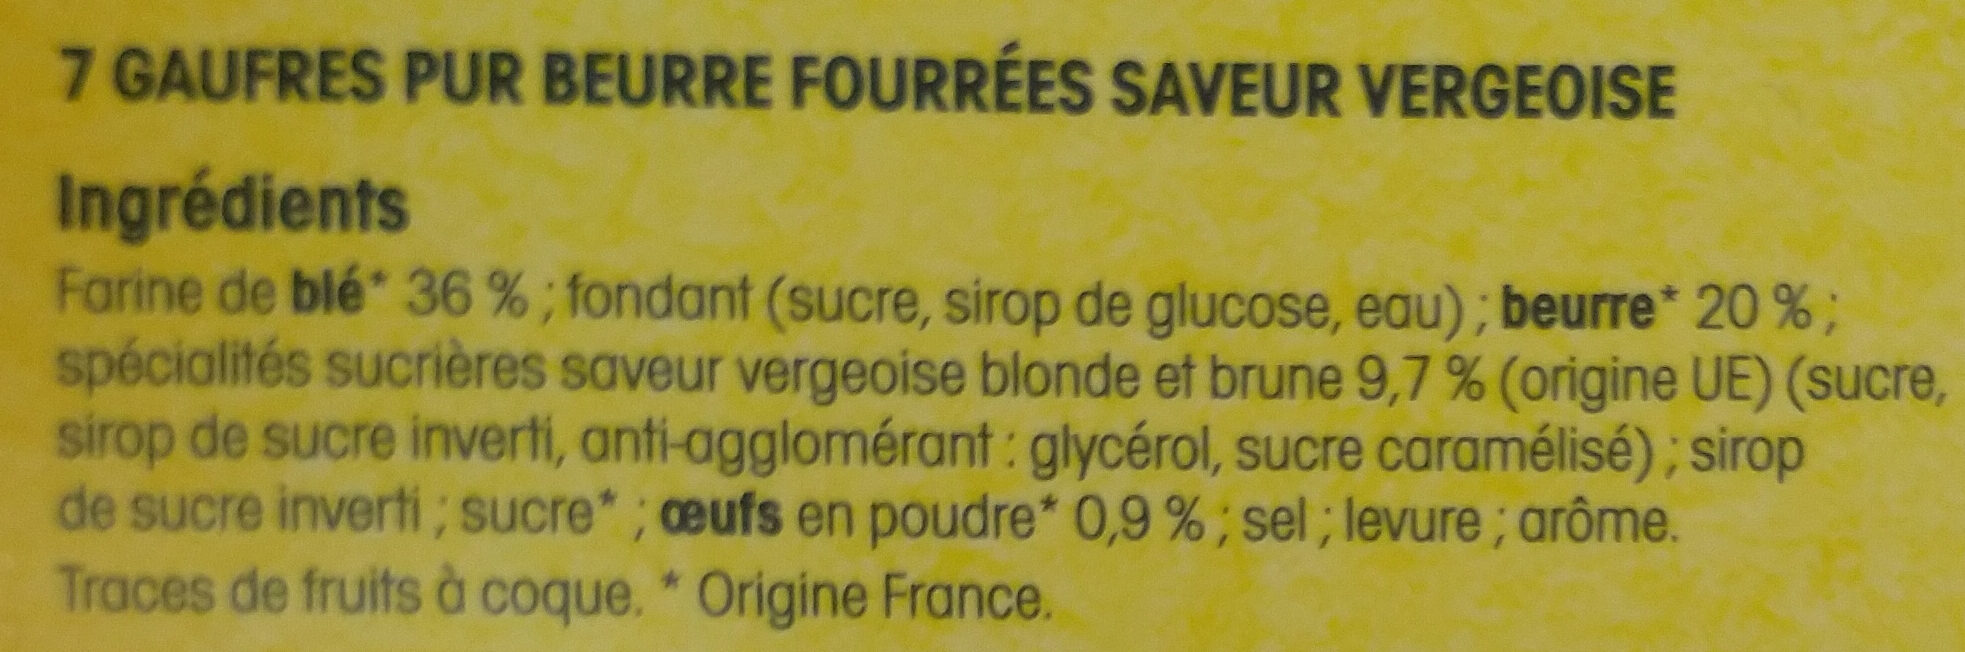 Gaufres des Flandres - Fourrées saveur vergeoise - Ingrédients